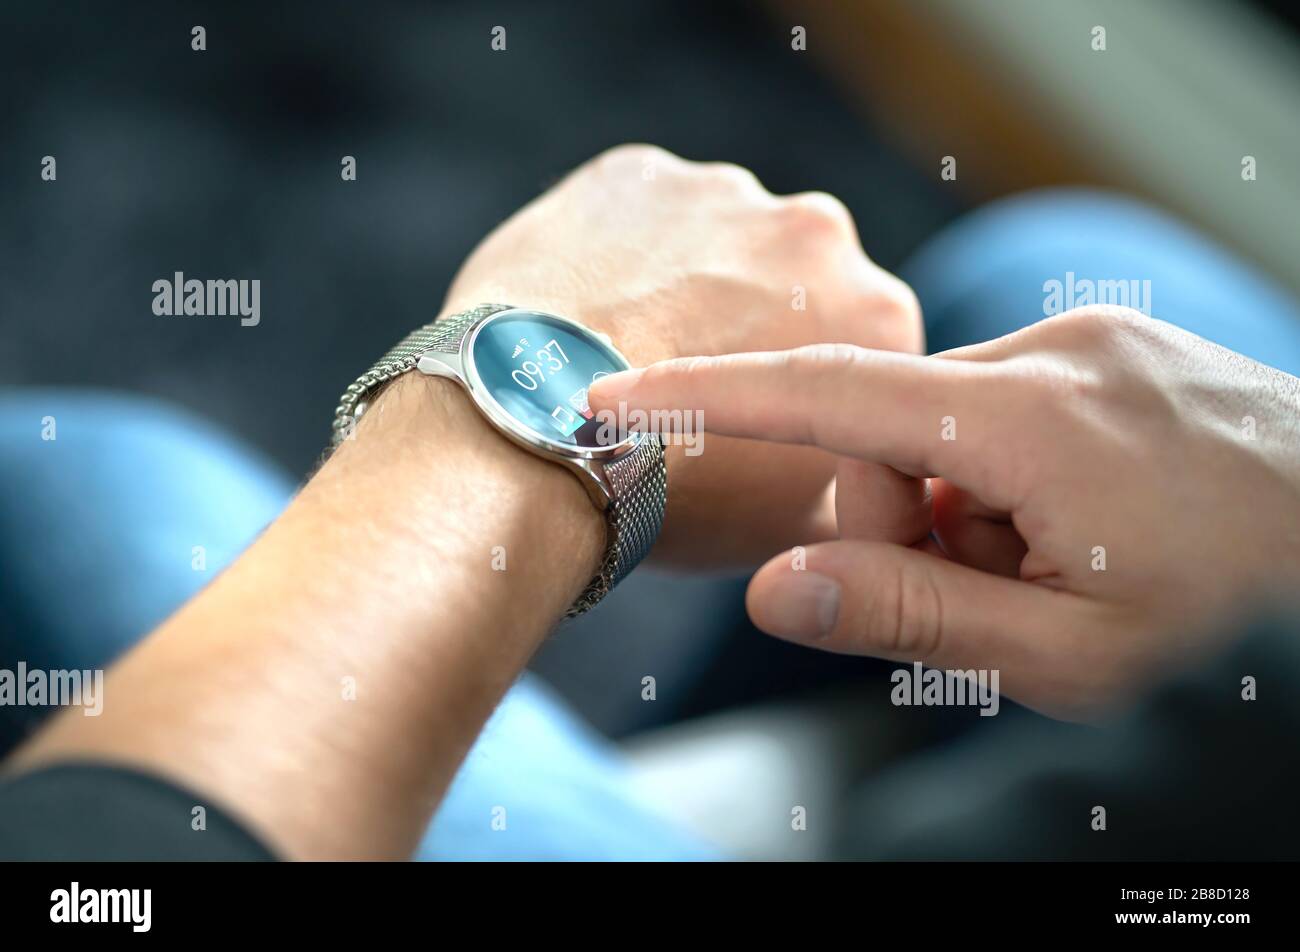 Uomo che tocca lo schermo dello smart watch per aprire la notifica e leggere il messaggio. Dispositivo mobile ibrido indossabile, gadget e activity tracker al polso. Foto Stock